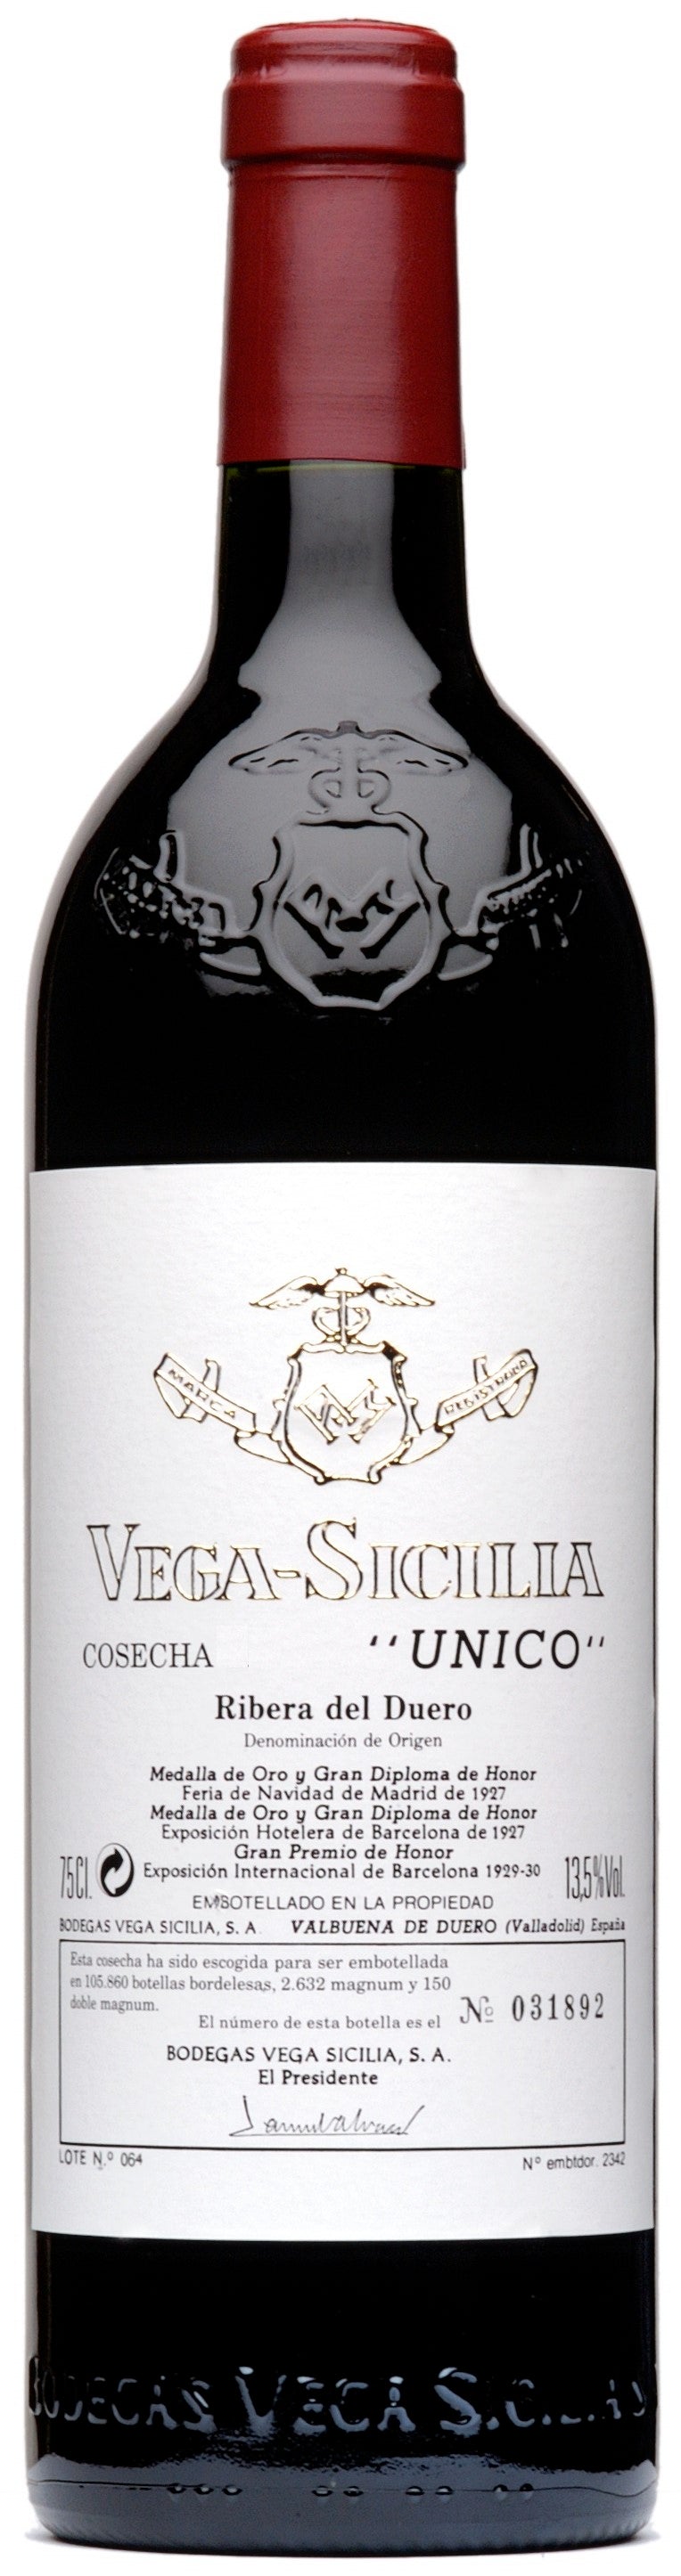 Wine Vins Vega Sicilia Unico Tinto